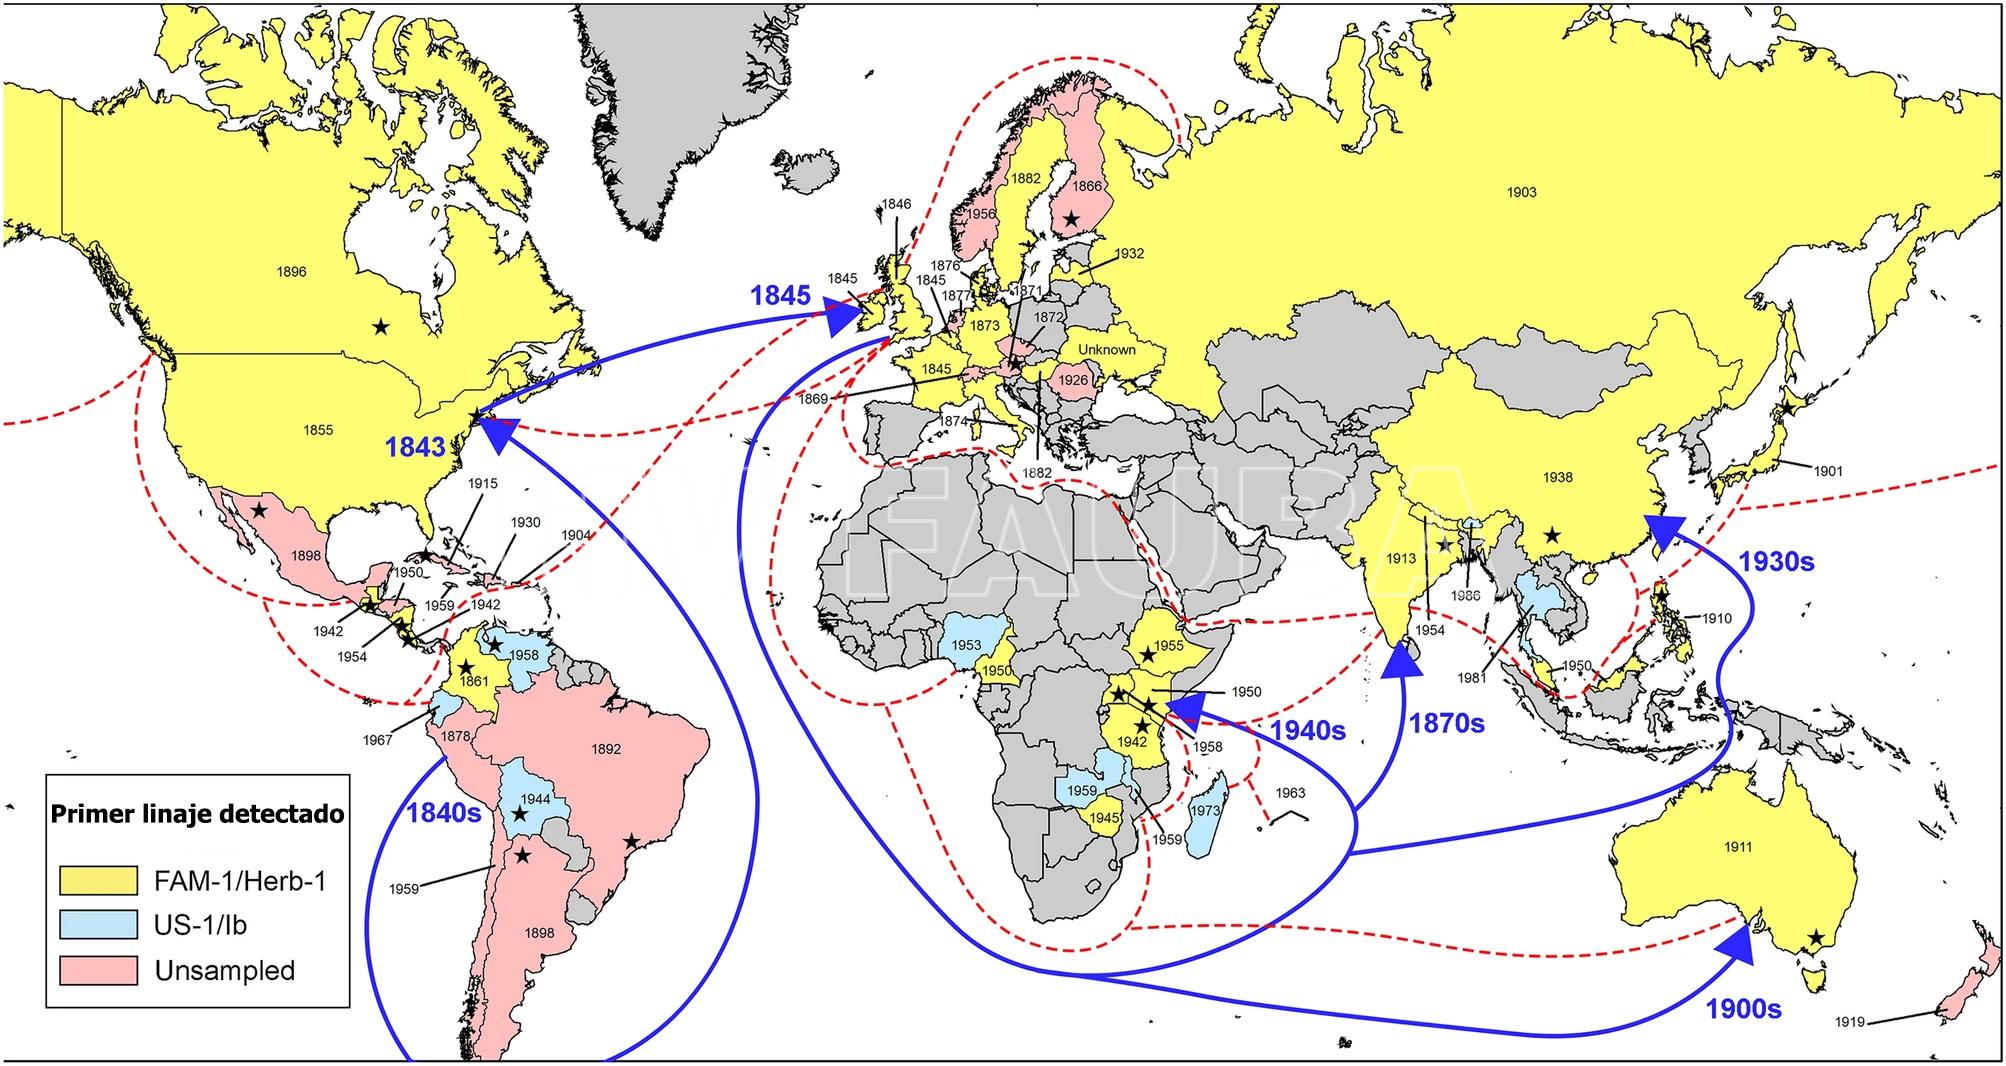 Mapa mundial de las primeras epidemias detectadas de tizón tardío causado por Phytophthora infestans. Los años dentro de cada país indican la fecha del espécimen más antiguo conocido, mientras que el color indica si el genotipo era FAM-1, US-1 o no muestreado. Las líneas punteadas indican rutas comerciales representativas del Imperio Británico alrededor de 1932. Las flechas indican la ruta de migración más probable tomada por el linaje FAM-1 hacia África y Asia y las rutas comerciales. Las estrellas dentro de cada país indican la ubicación aproximada del primer brote registrado, si se conoce. Autor: Saville y Ristaino, 2021.